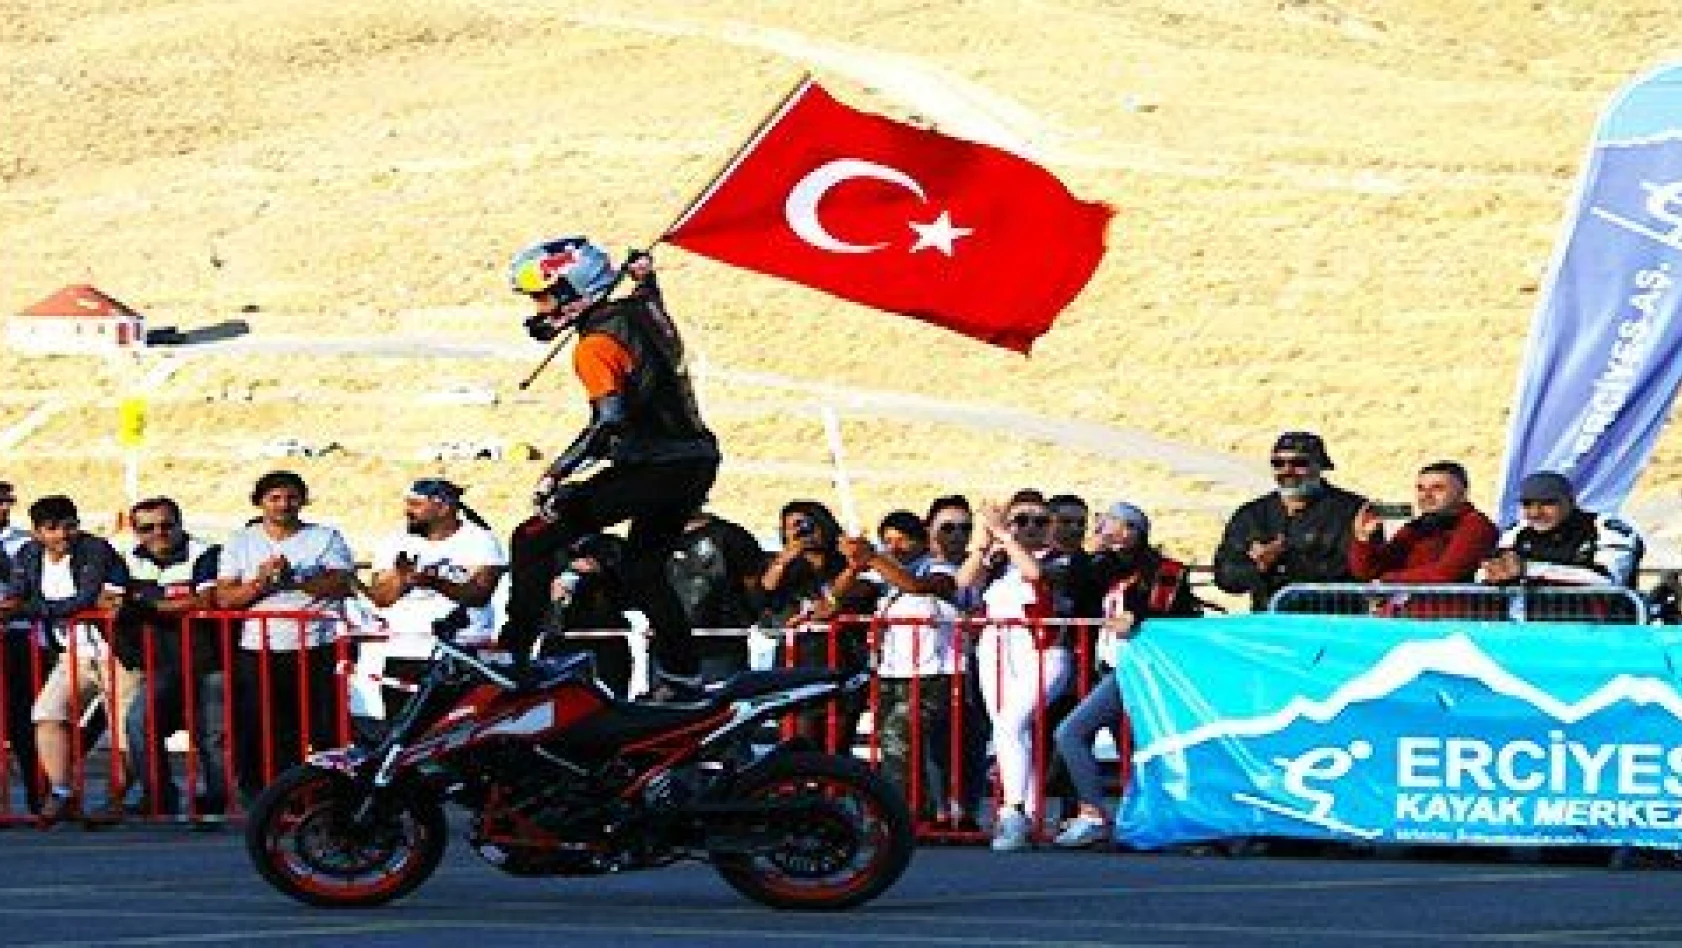 Motosiklet severler Erciyes Moto Fest'te buluştu